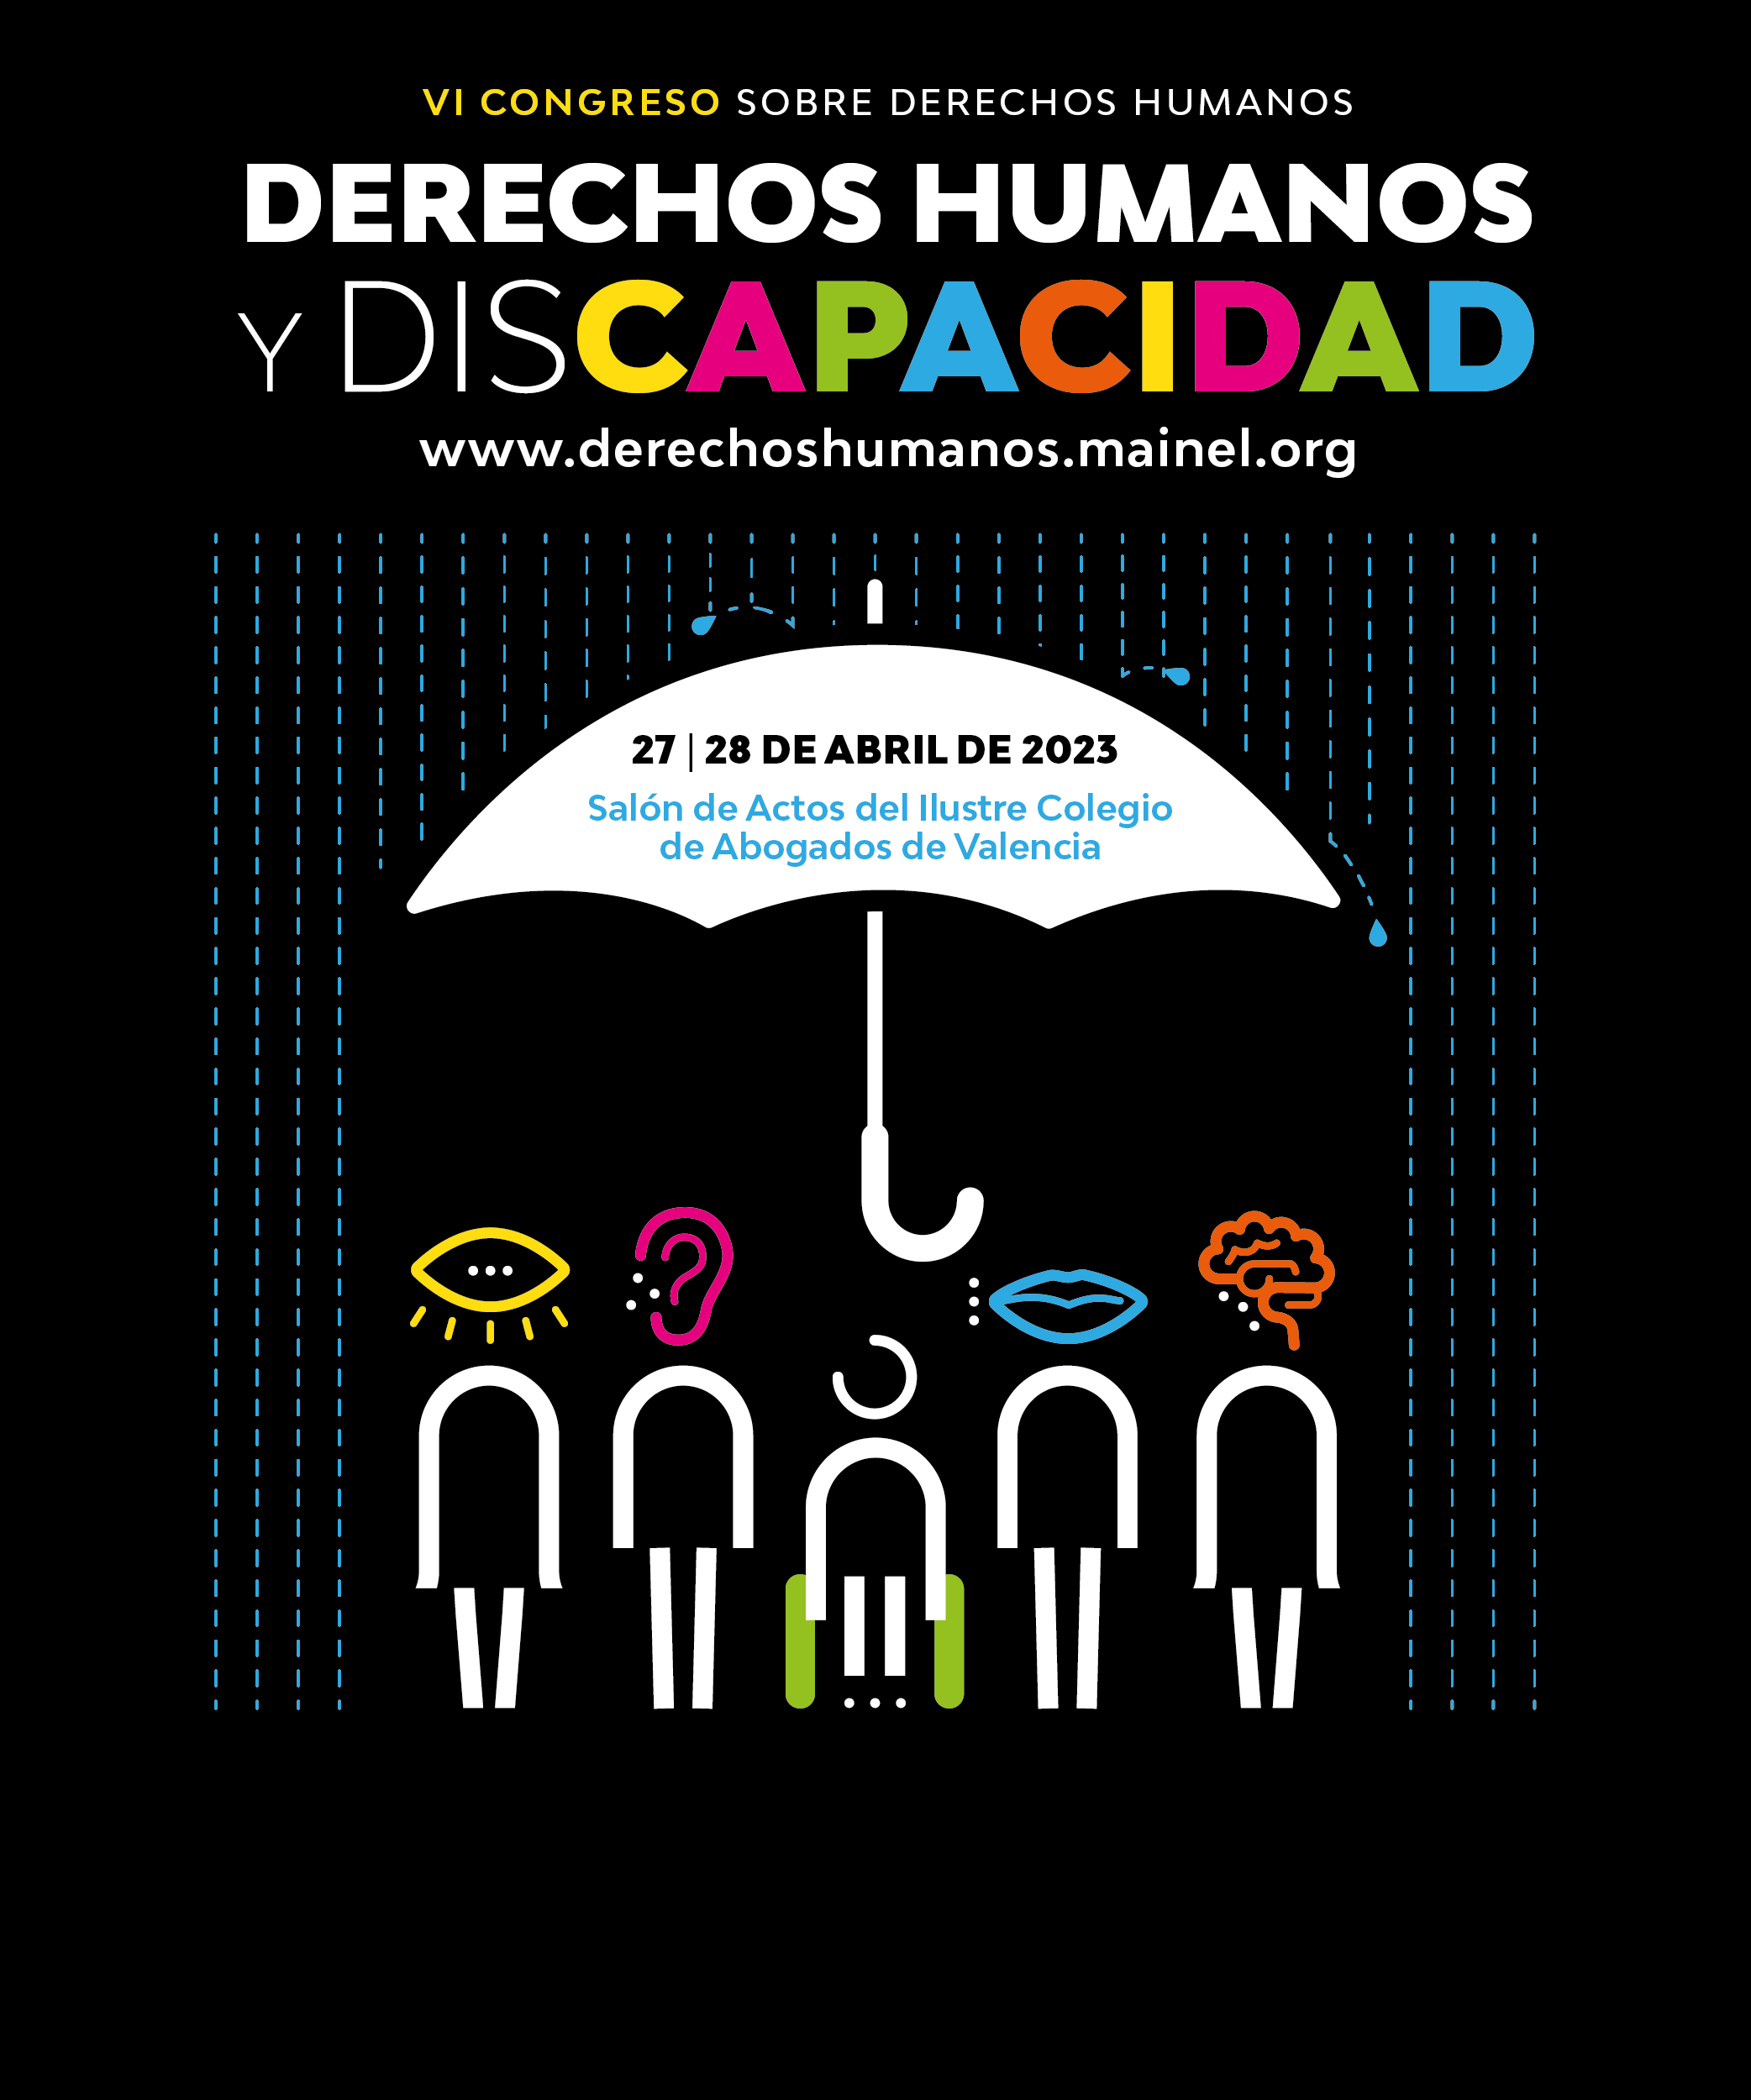 VI Congreso sobre Derechos Humanos. Derechos Humanos y Discapacidad. 27 y 28 de abril de 2023. Salón de actos del Ilustre Colegio de Abogados de Valencia. www.derechoshumanos.mainel.org